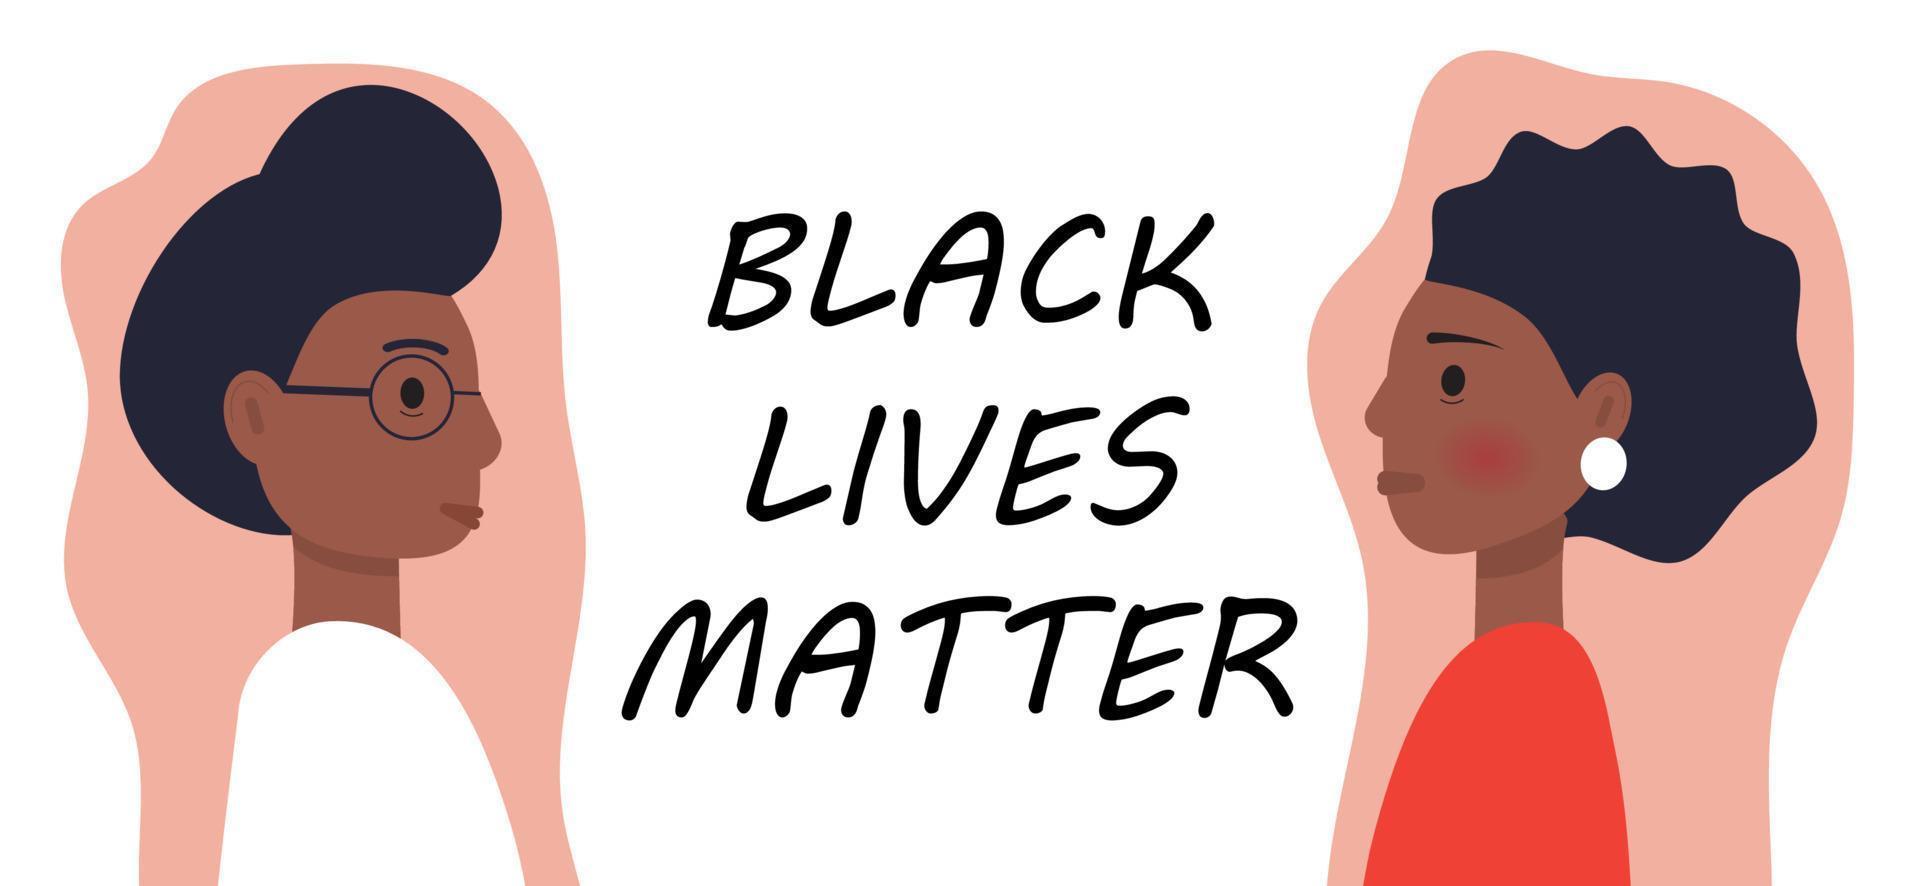 las vidas negras importan el concepto de vector en estilo de dibujos  animados. los afroamericanos están